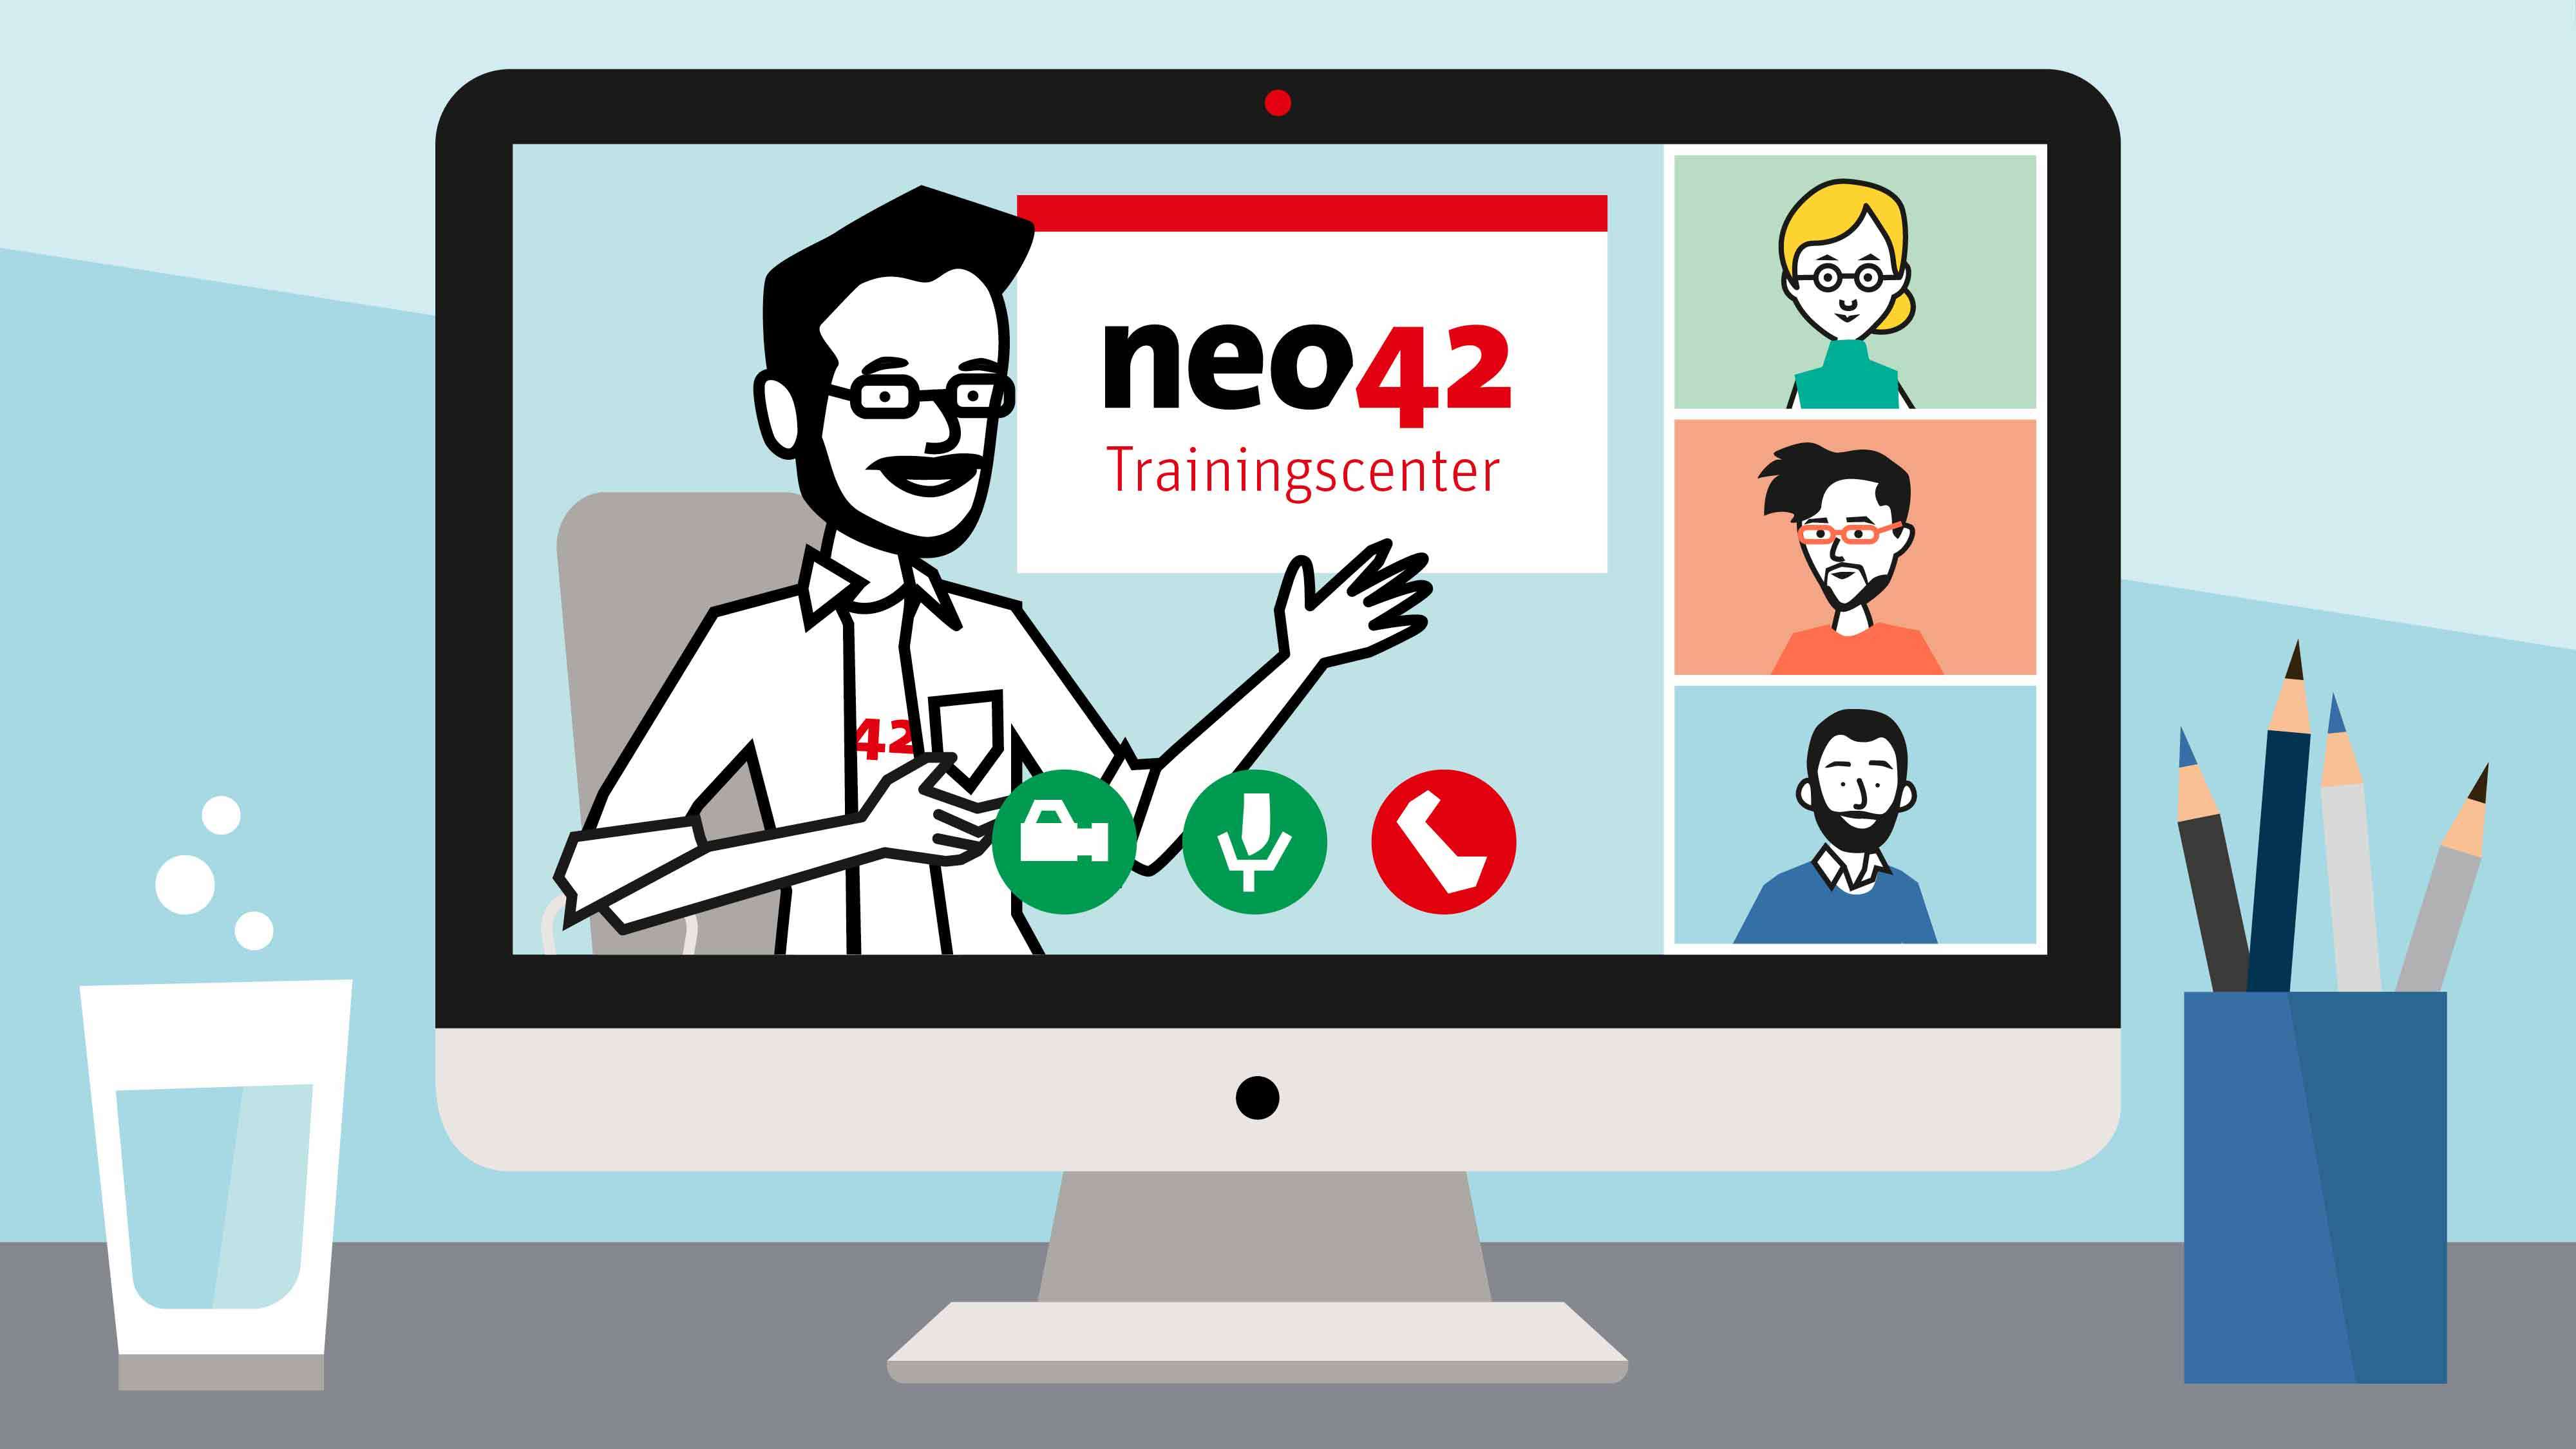 neo42 Paketdepot E Training